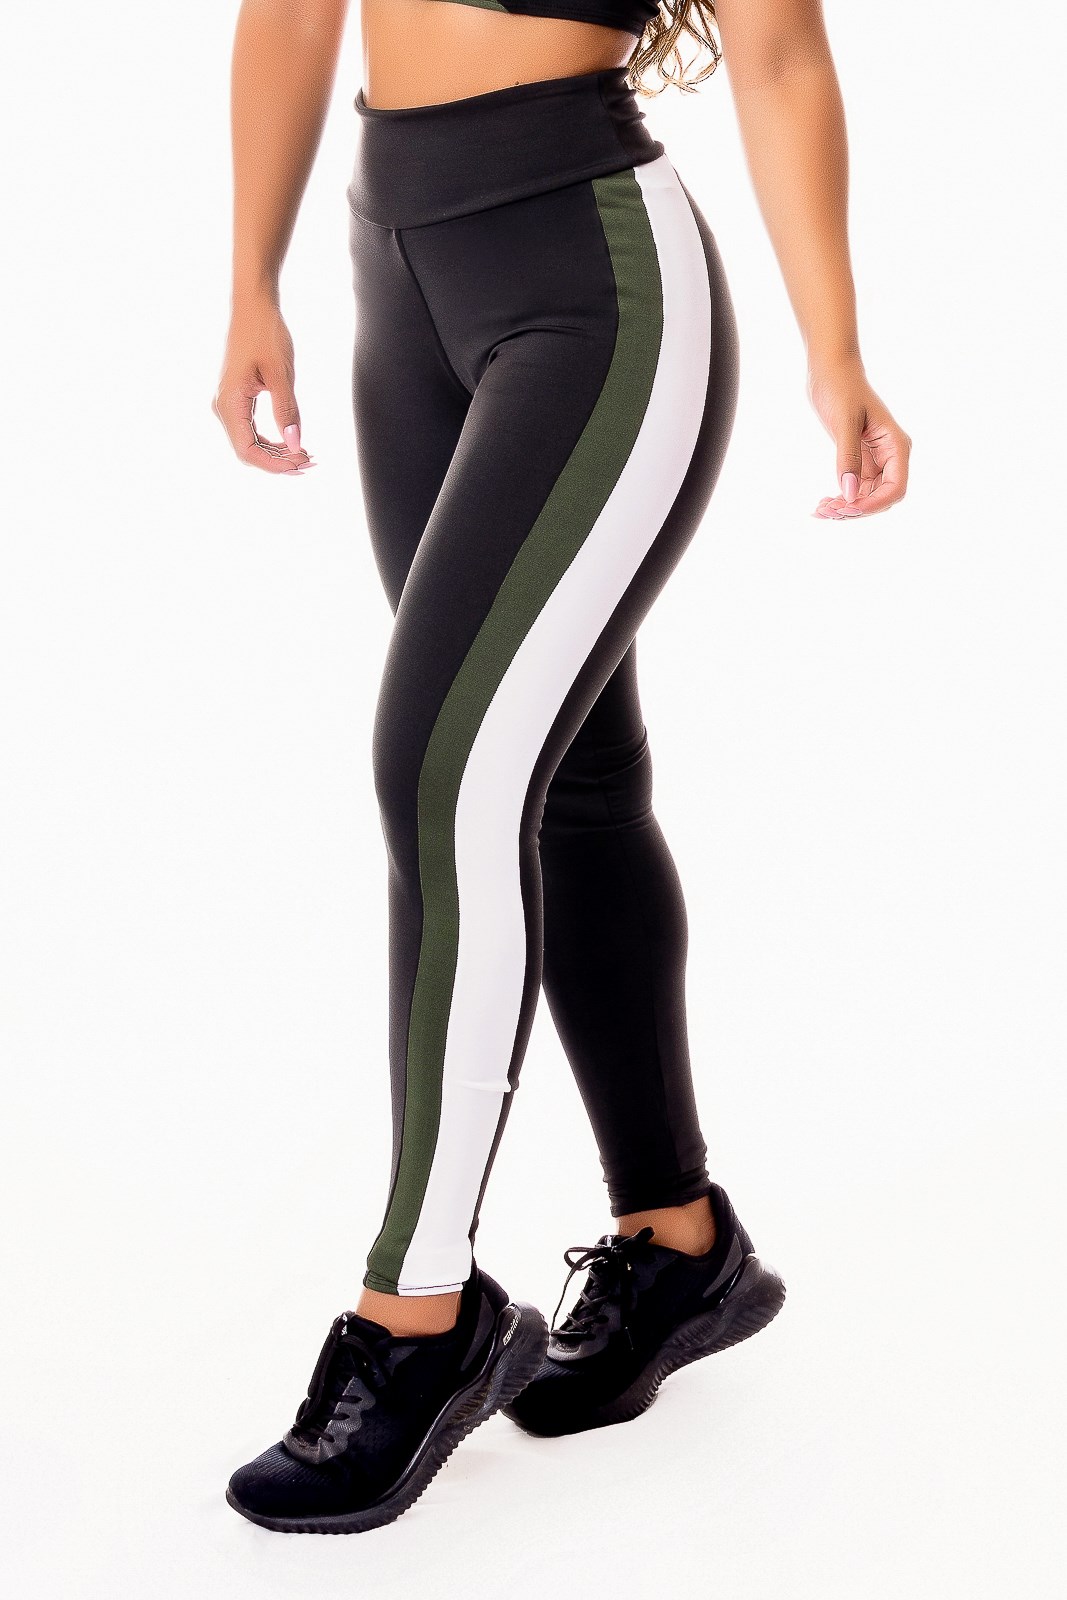 Calça Legging Fitness Academia Preta com Verde Militar e Vivo Branco  Cintura Alta REF: SV48